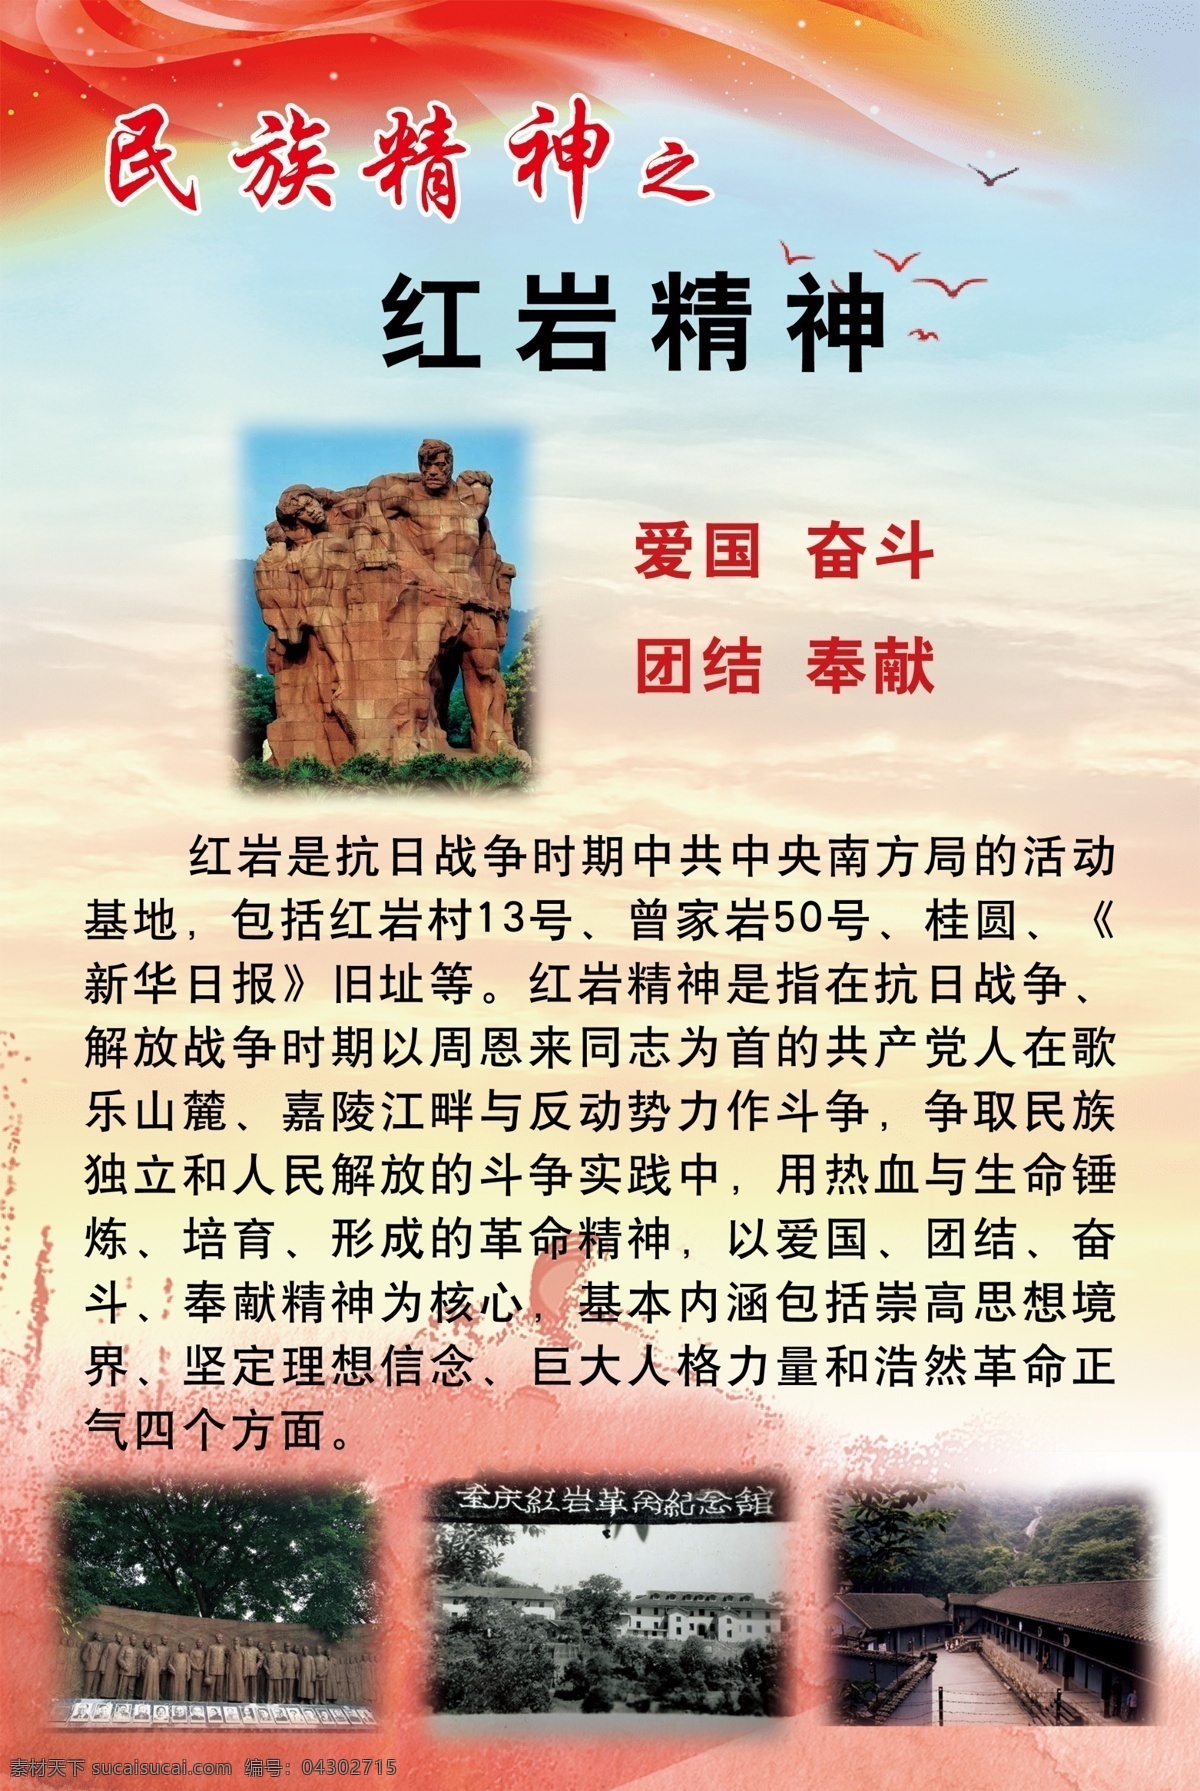 民族精神 红岩精神图片 学校 文化墙 版面 黄背景 红岩精神 分层 文化艺术 传统文化